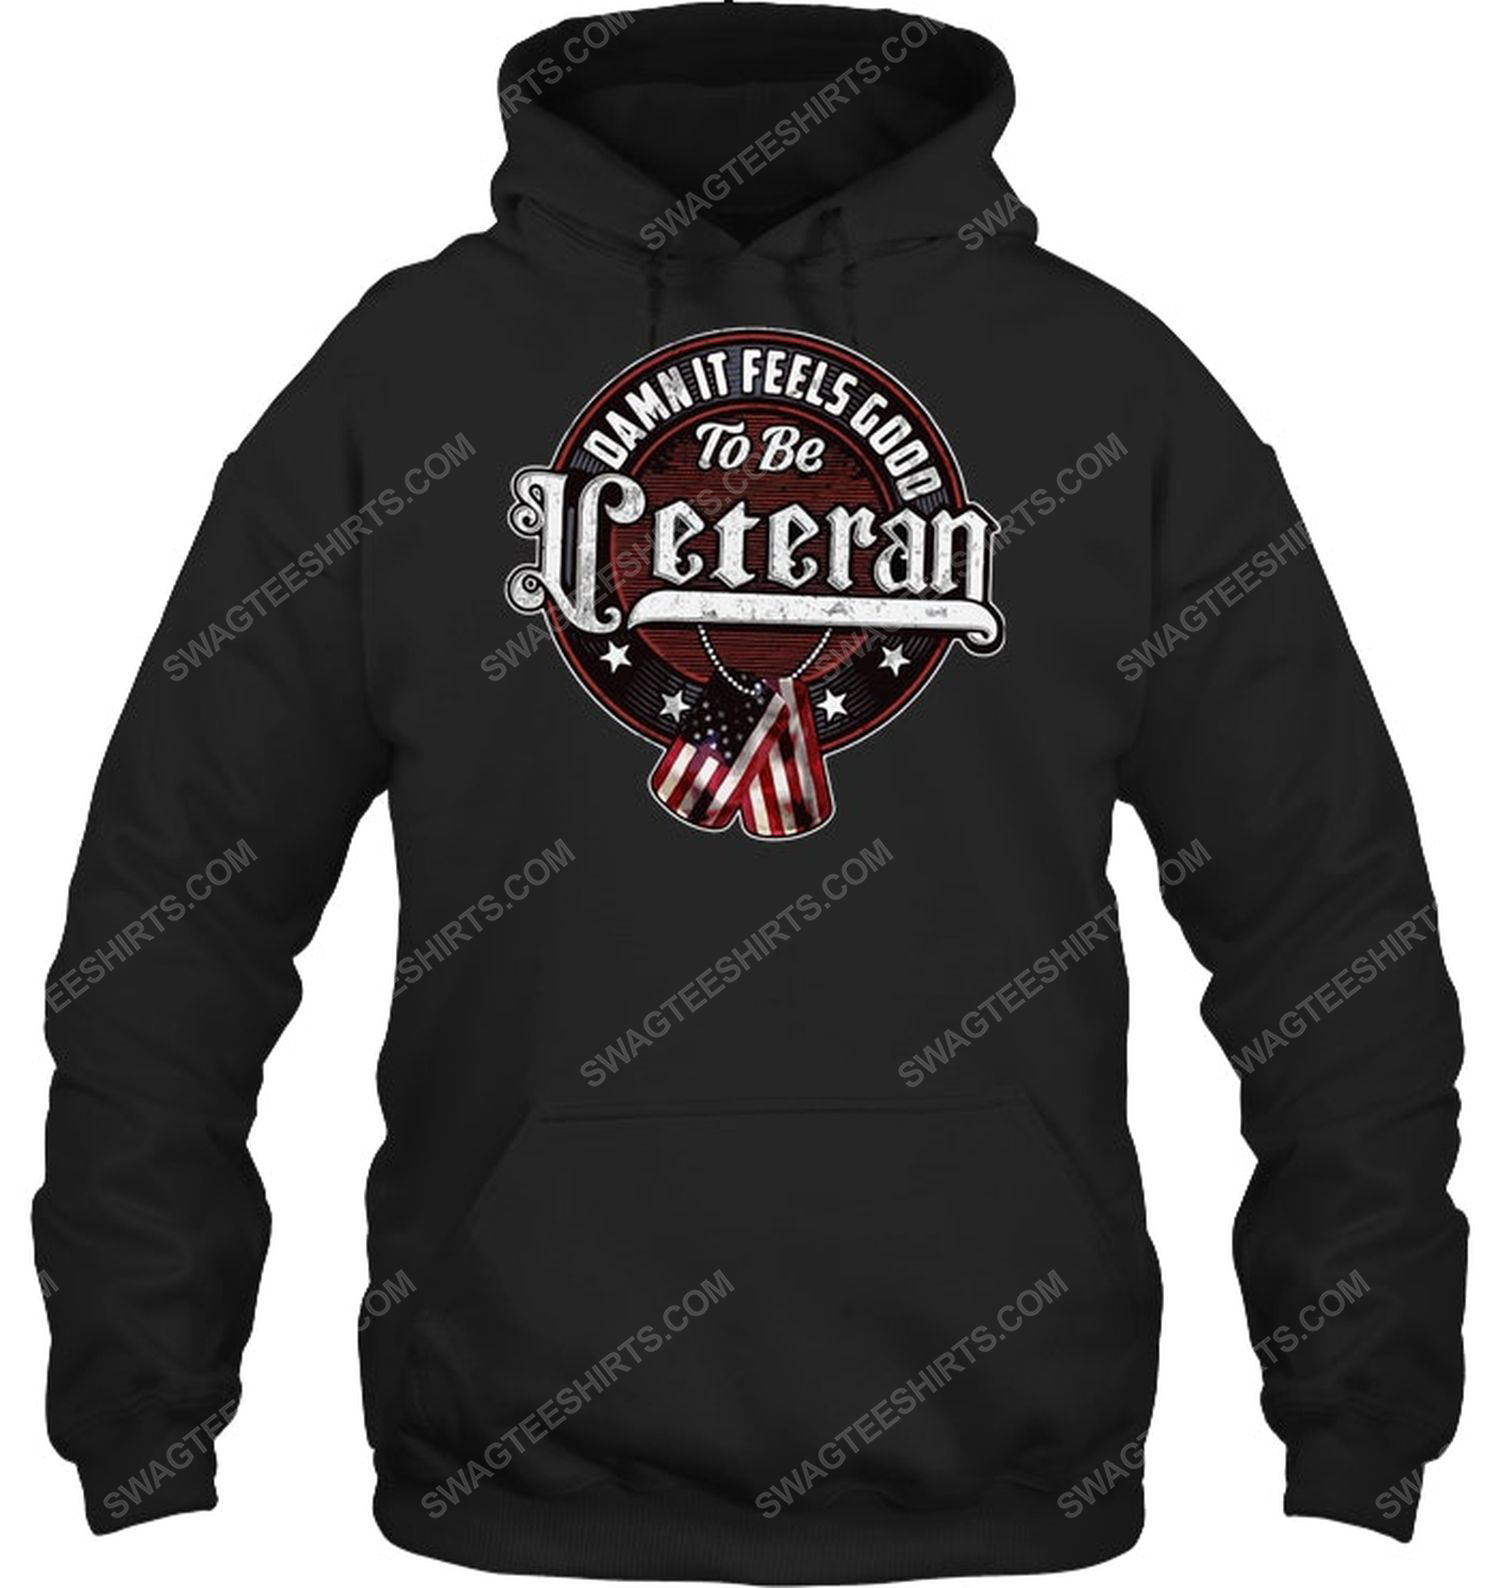 Feels good to be veteran political hoodie